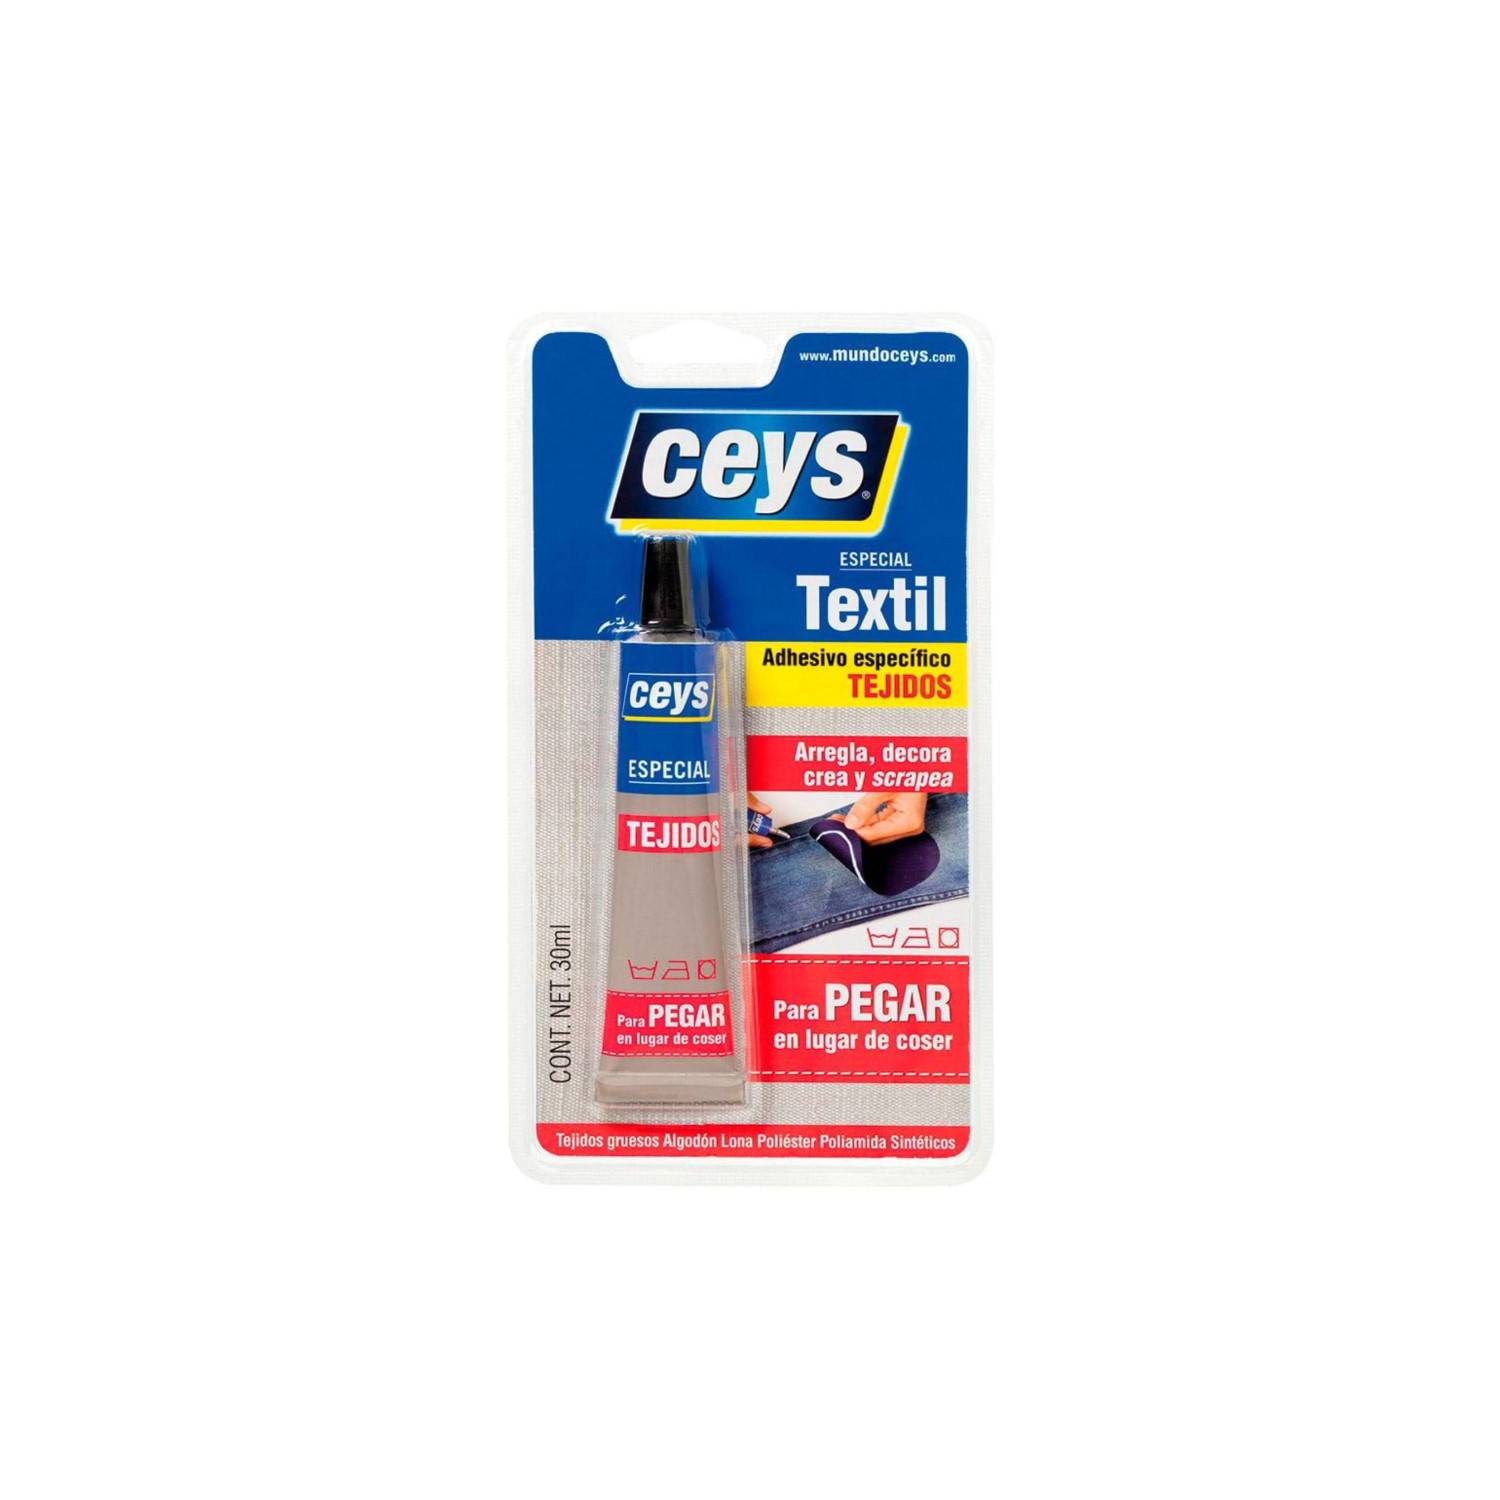 Ceys - Pegamento Textil - Adhesivo específico tejidos - Textilceys